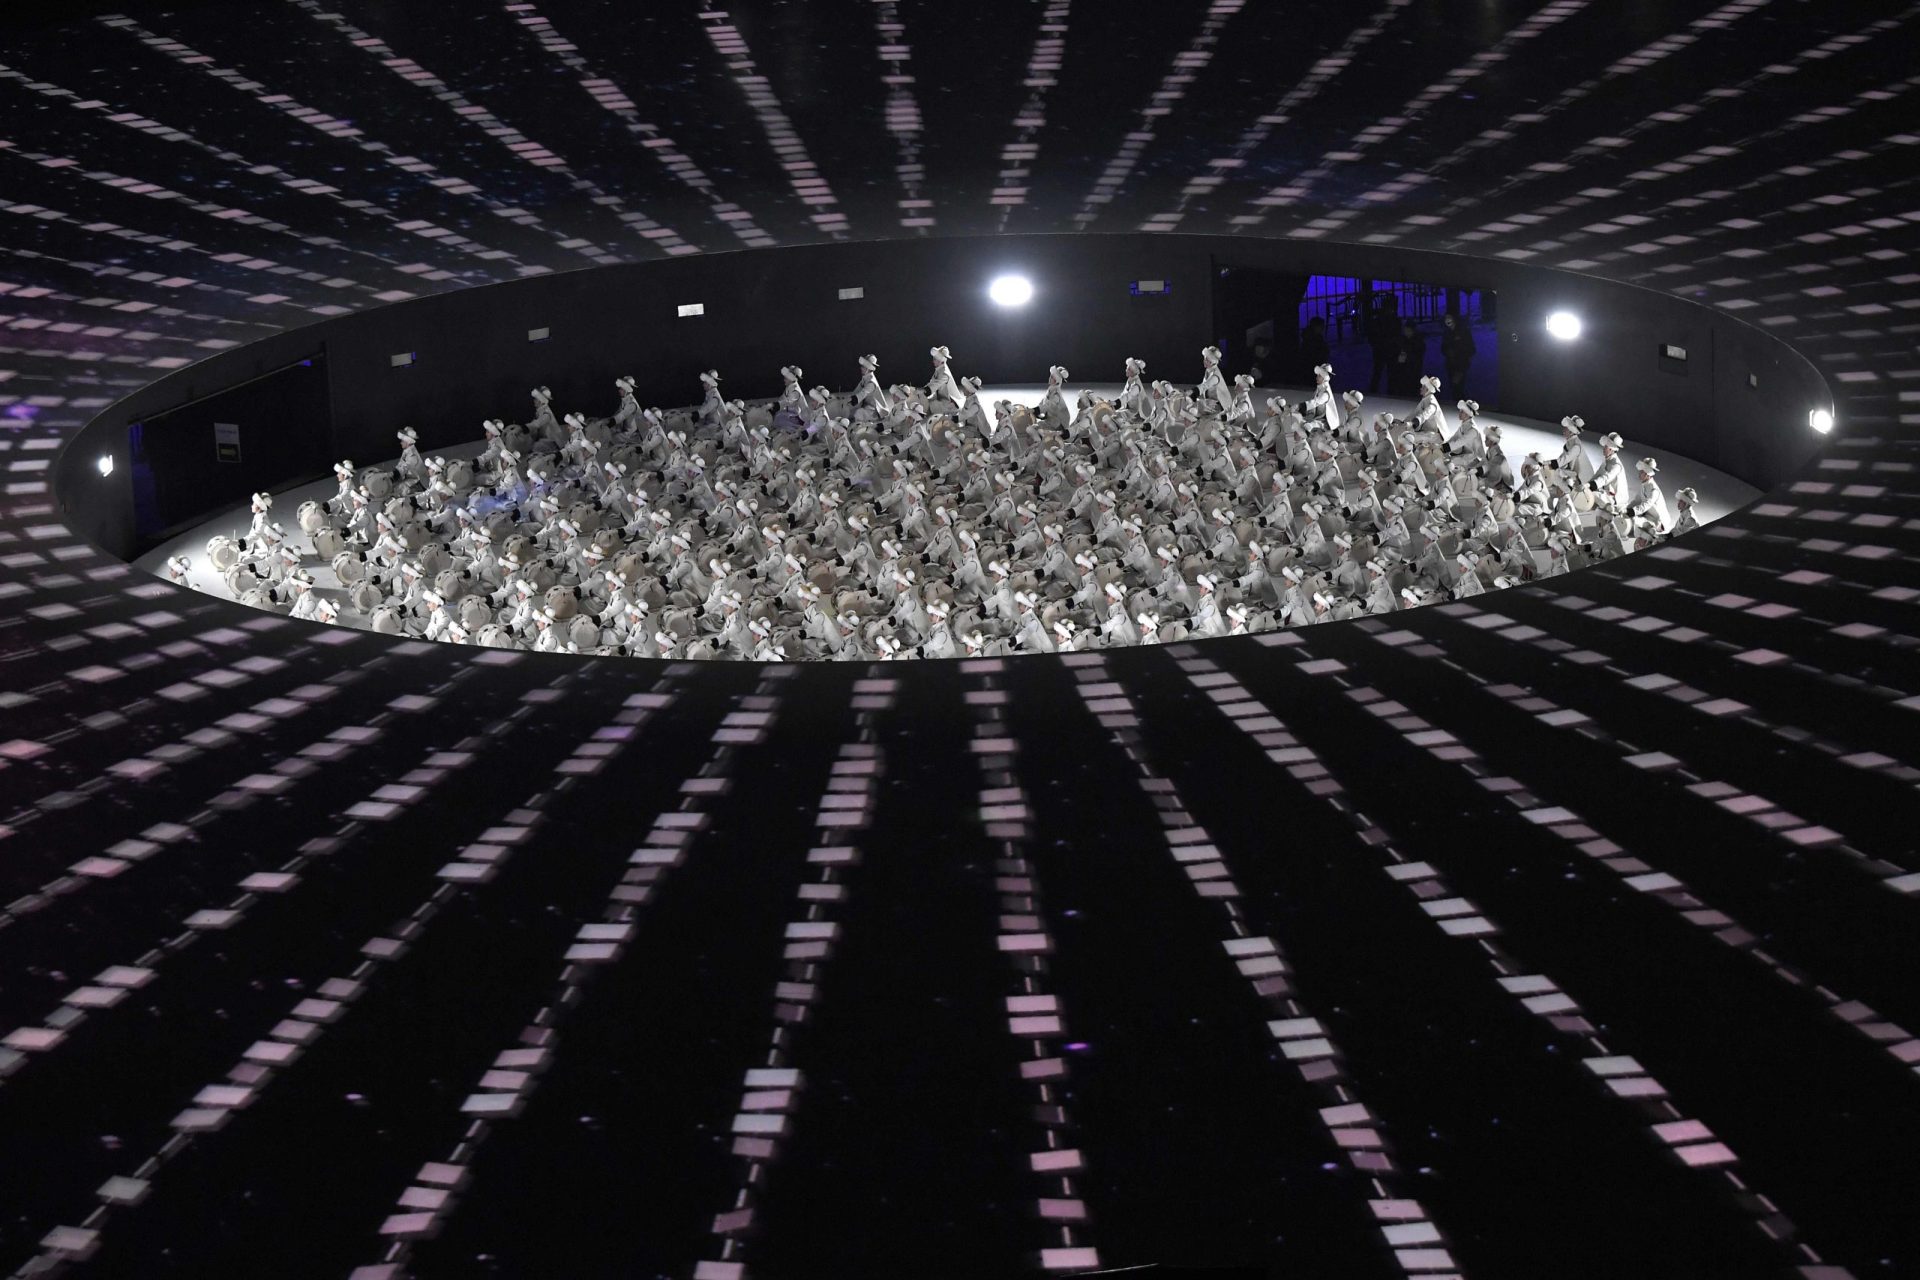 As fotos da cerimónia de abertura dos Jogos Olímpicos de Pyeongchang